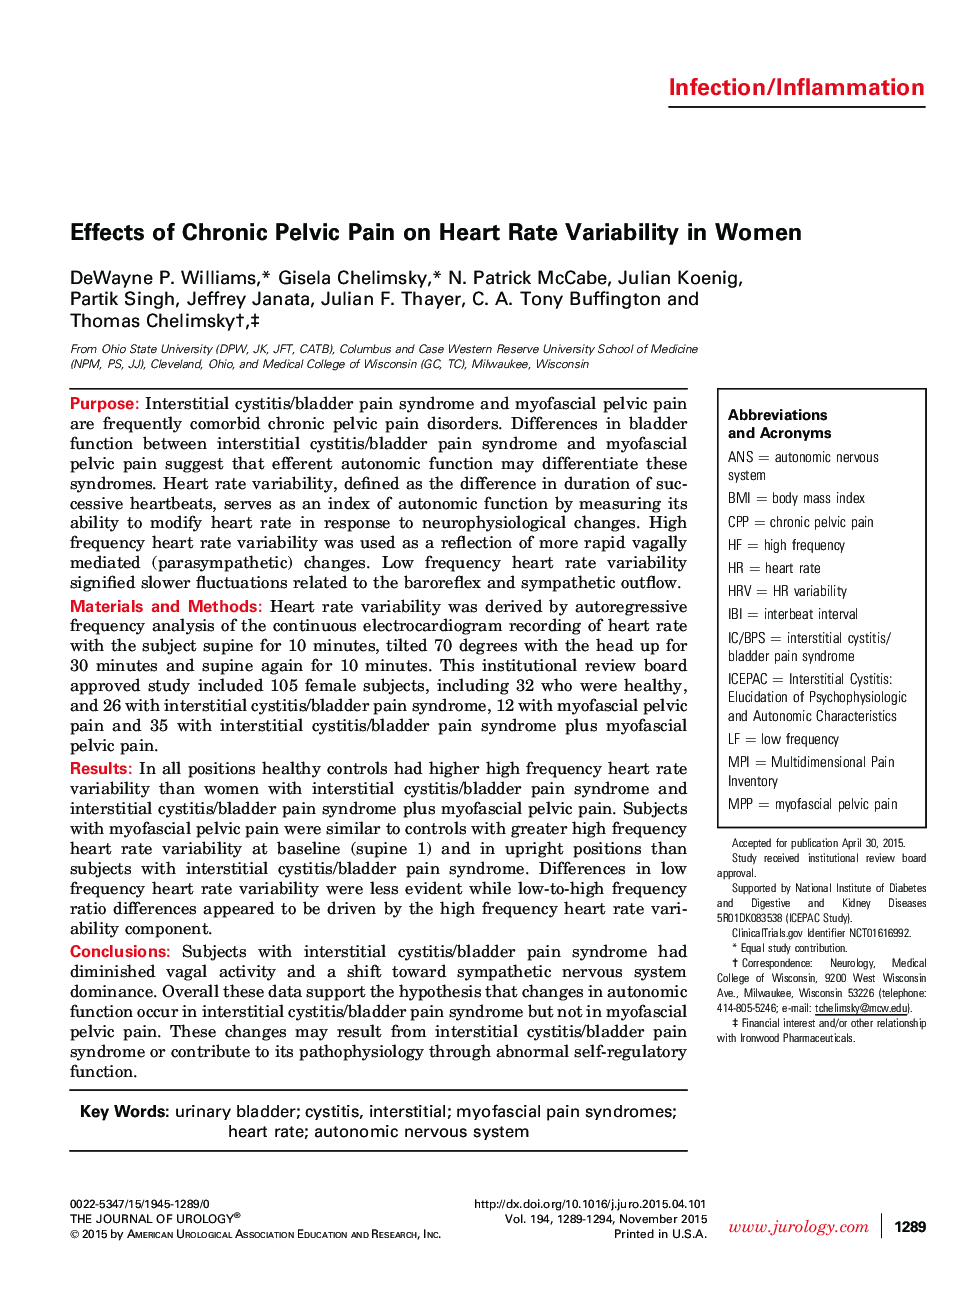 اثرات درد مزمن لگن بر متغیر بودن ضربان قلب در زنان 